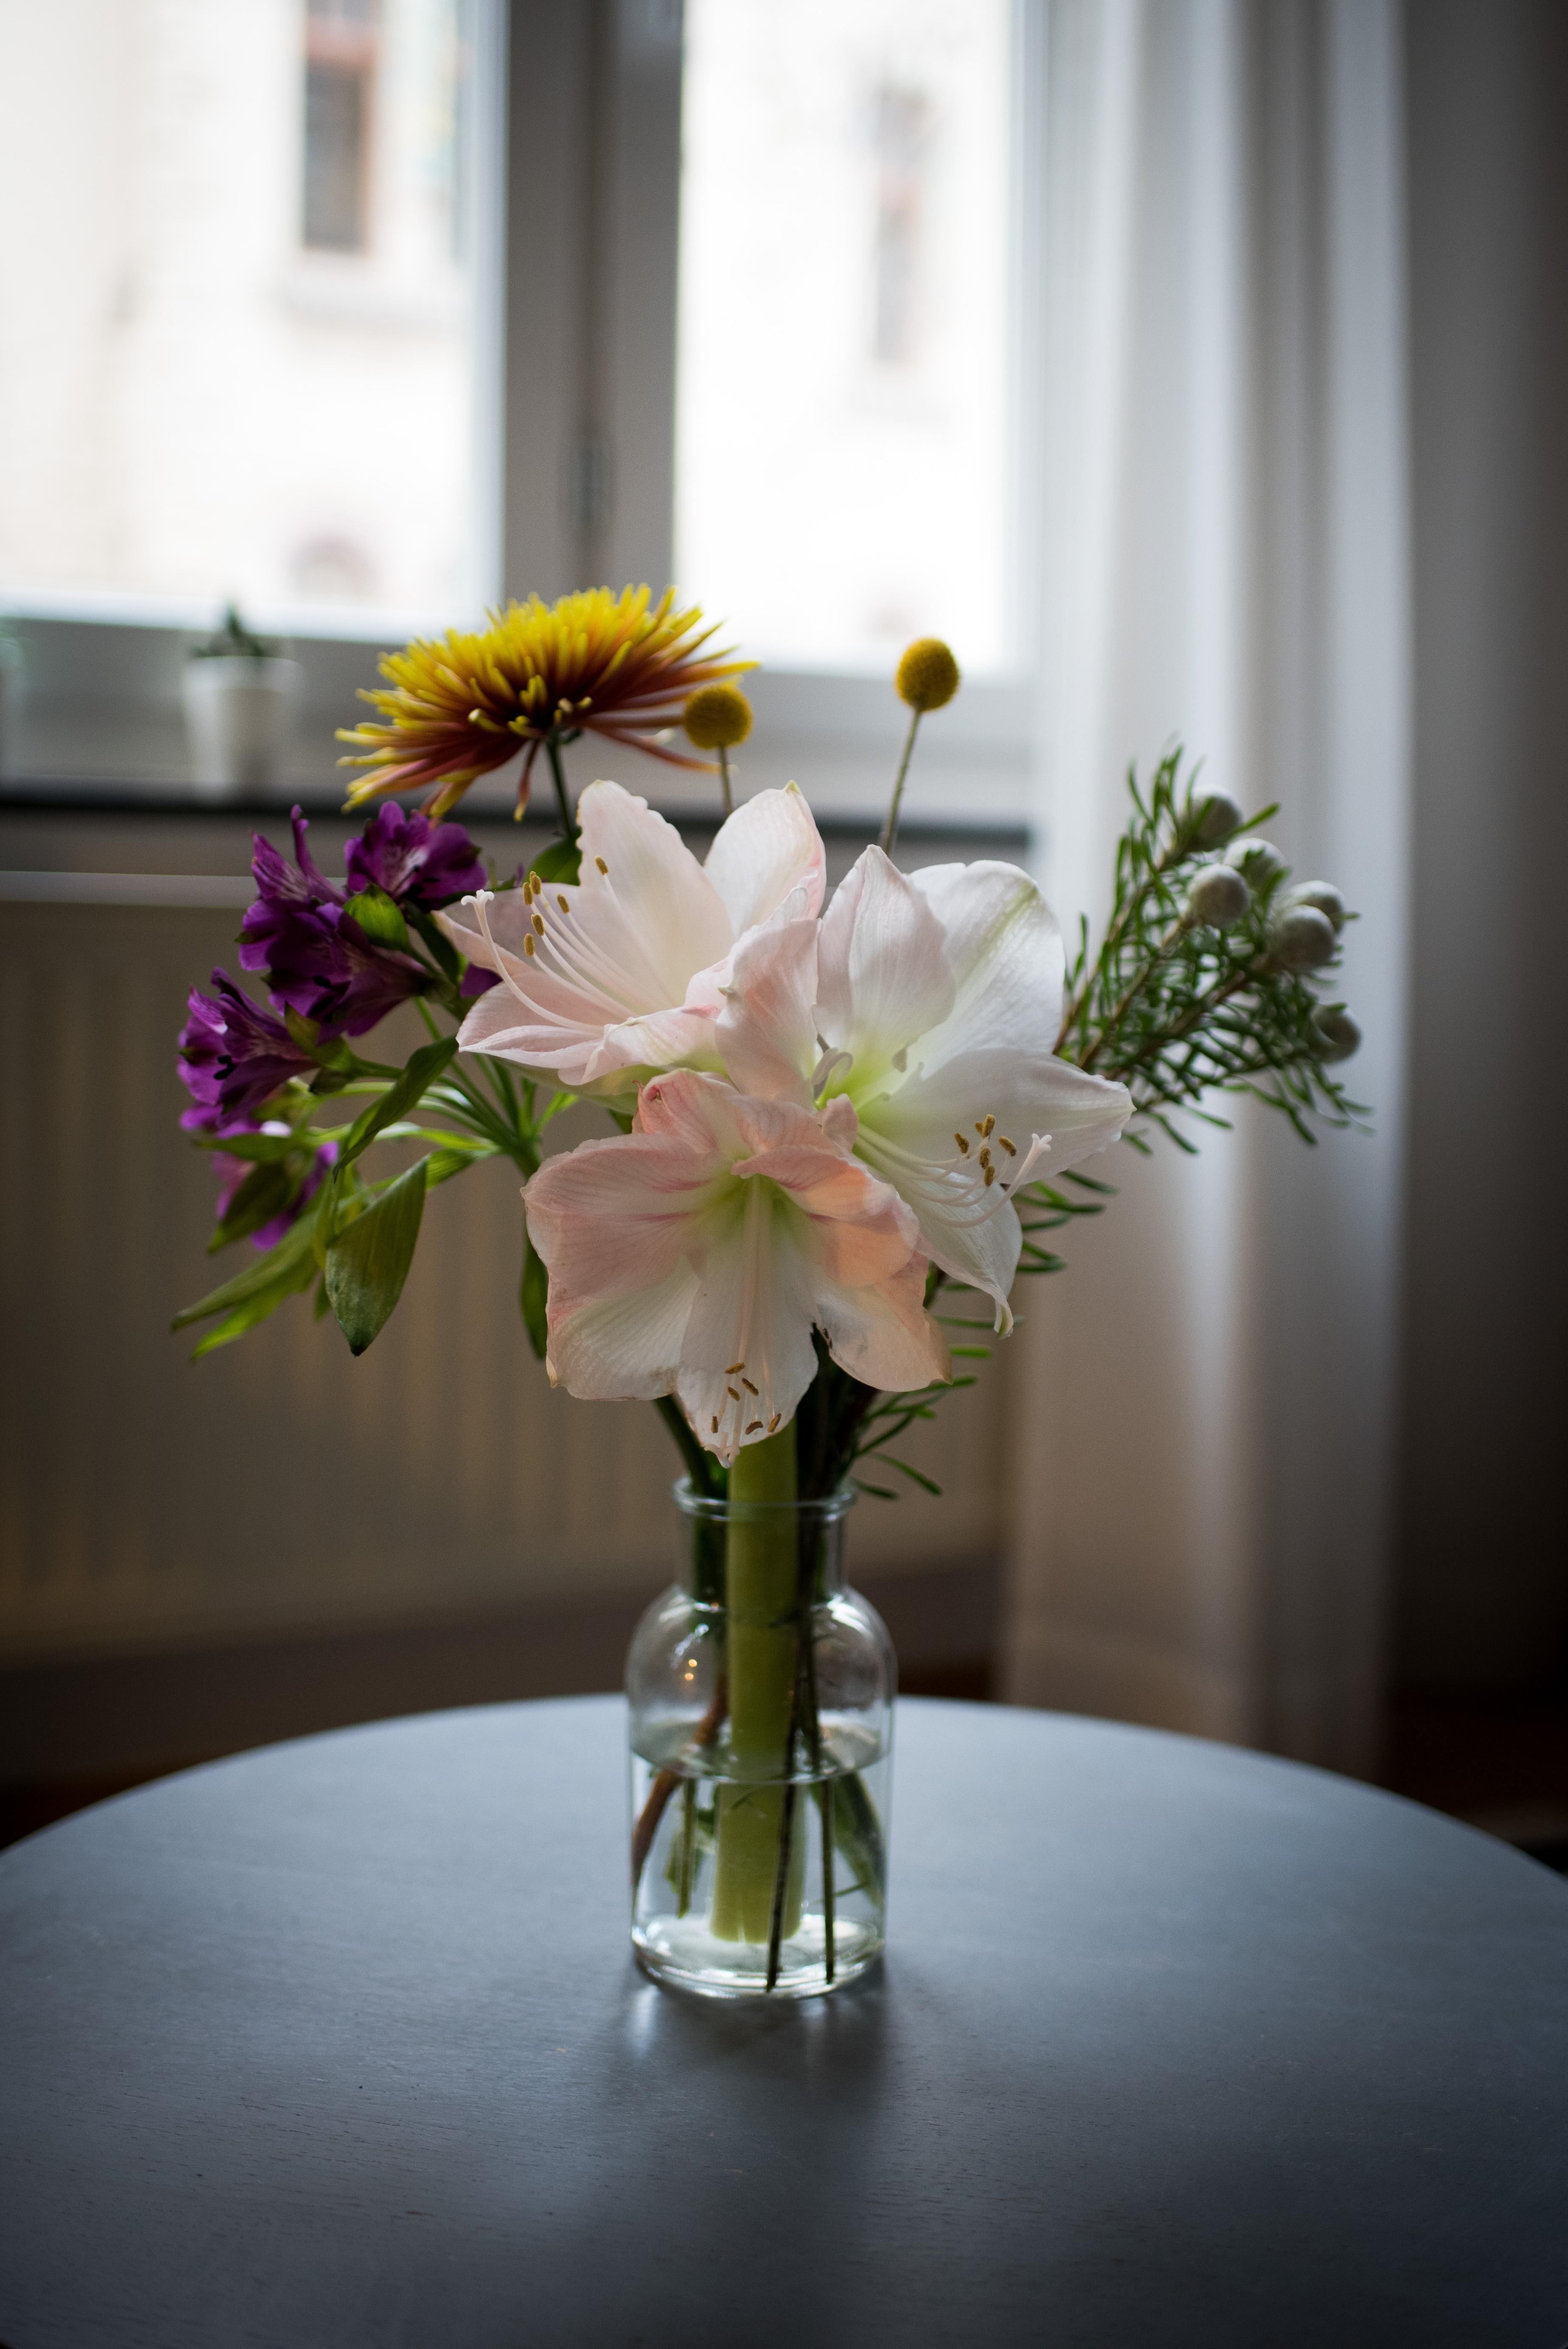 Schönen Mittwoch! #wohnzimmer #freshflowers #interiorstyle